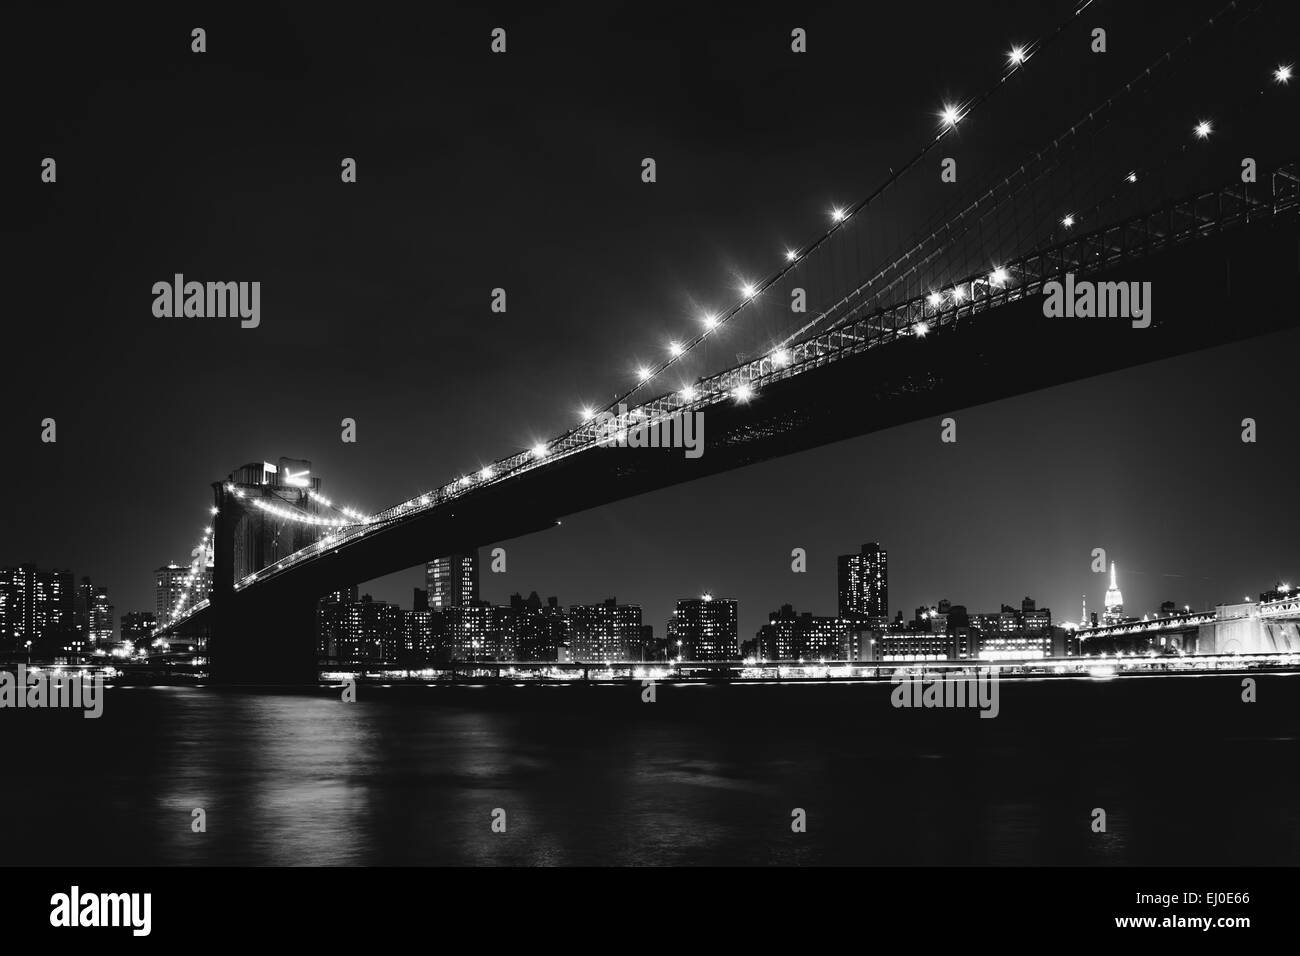 Le Pont de Brooklyn de nuit vu de Brooklyn Bridge Park, New York. Banque D'Images